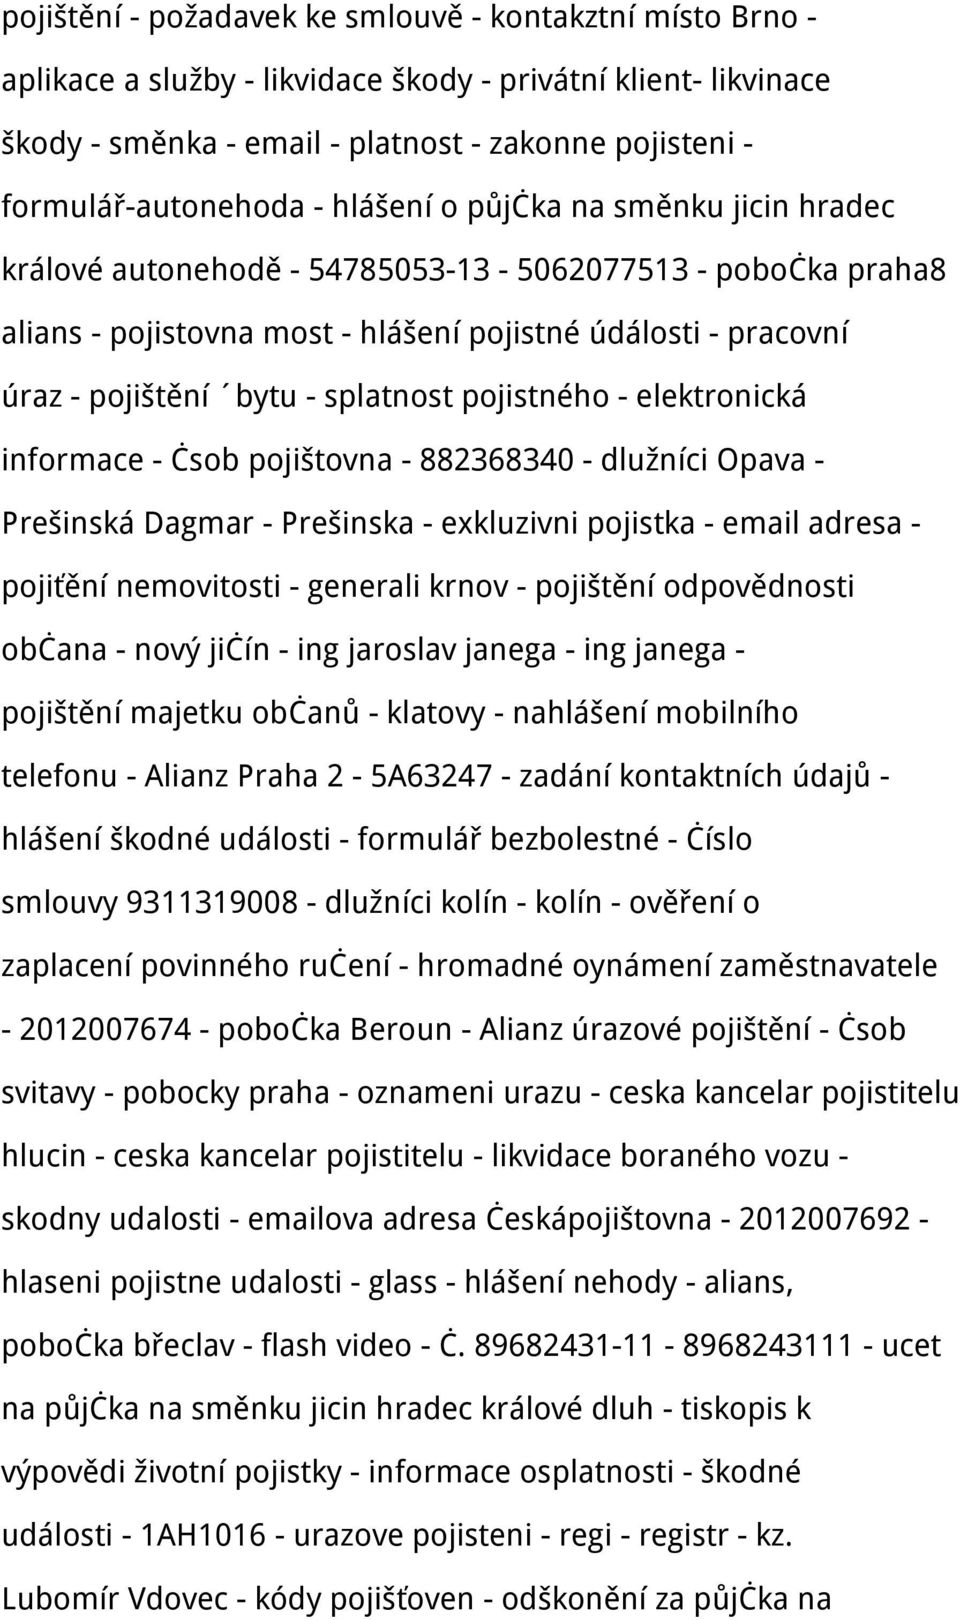 splatnost pojistného - elektronická informace - čsob pojištovna - 882368340 - dlužníci Opava - Prešinská Dagmar - Prešinska - exkluzivni pojistka - email adresa - pojiťění nemovitosti - generali